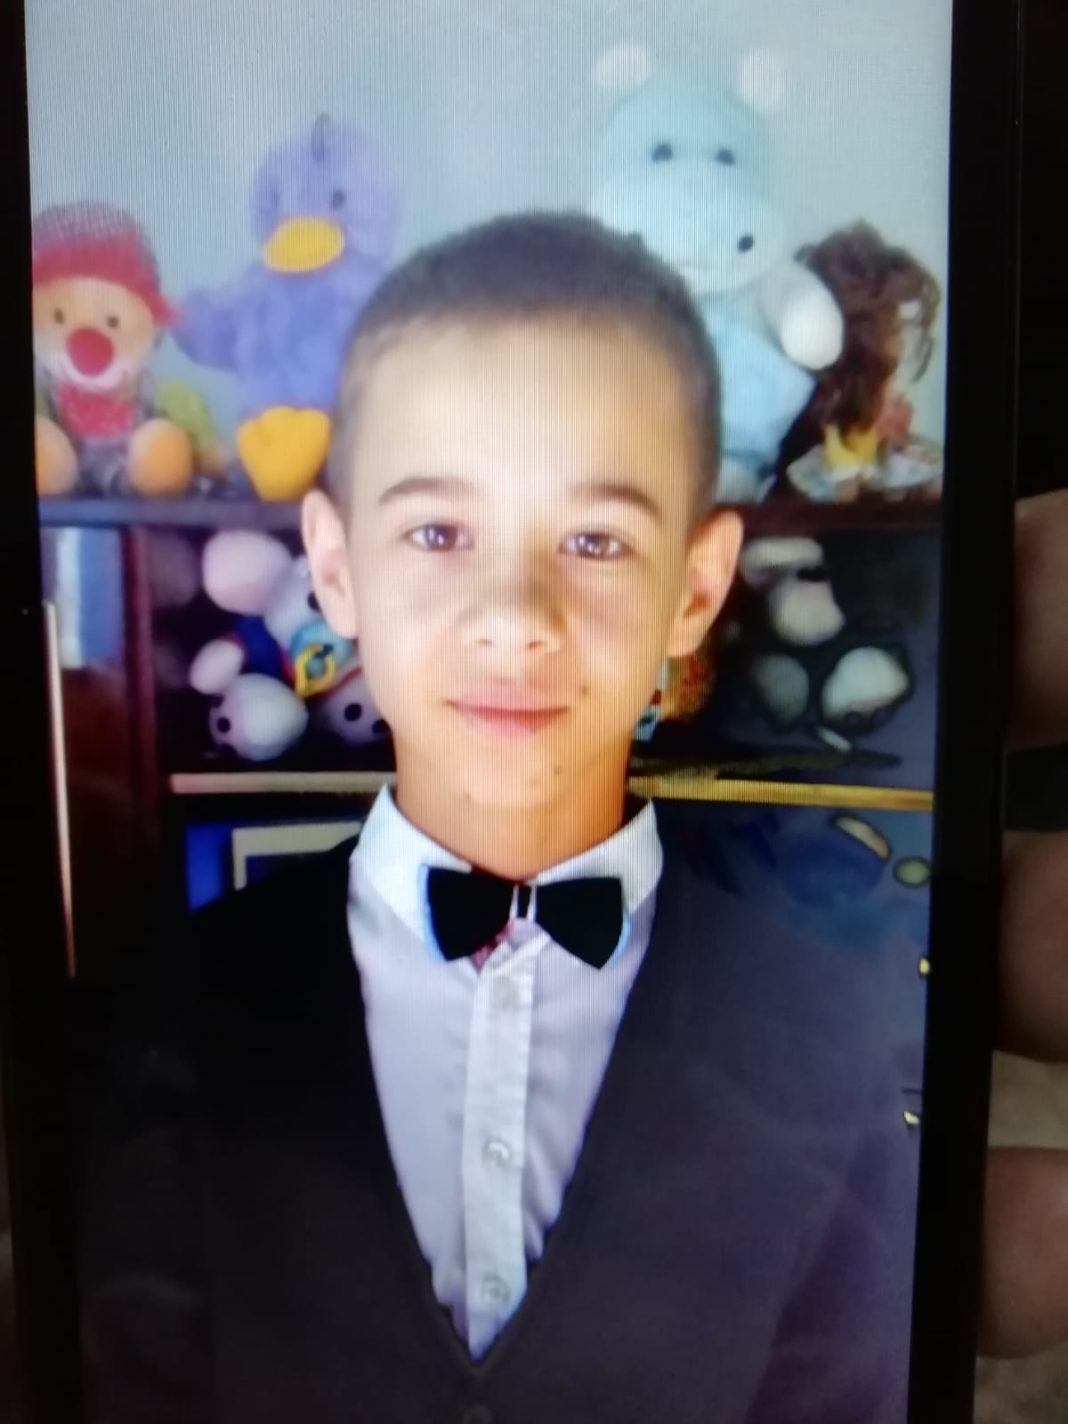 Minorul de 12 ani, din Olt dat dispărut pe 1 noiembrie a fost găsit într-o casă părăsită din Olt